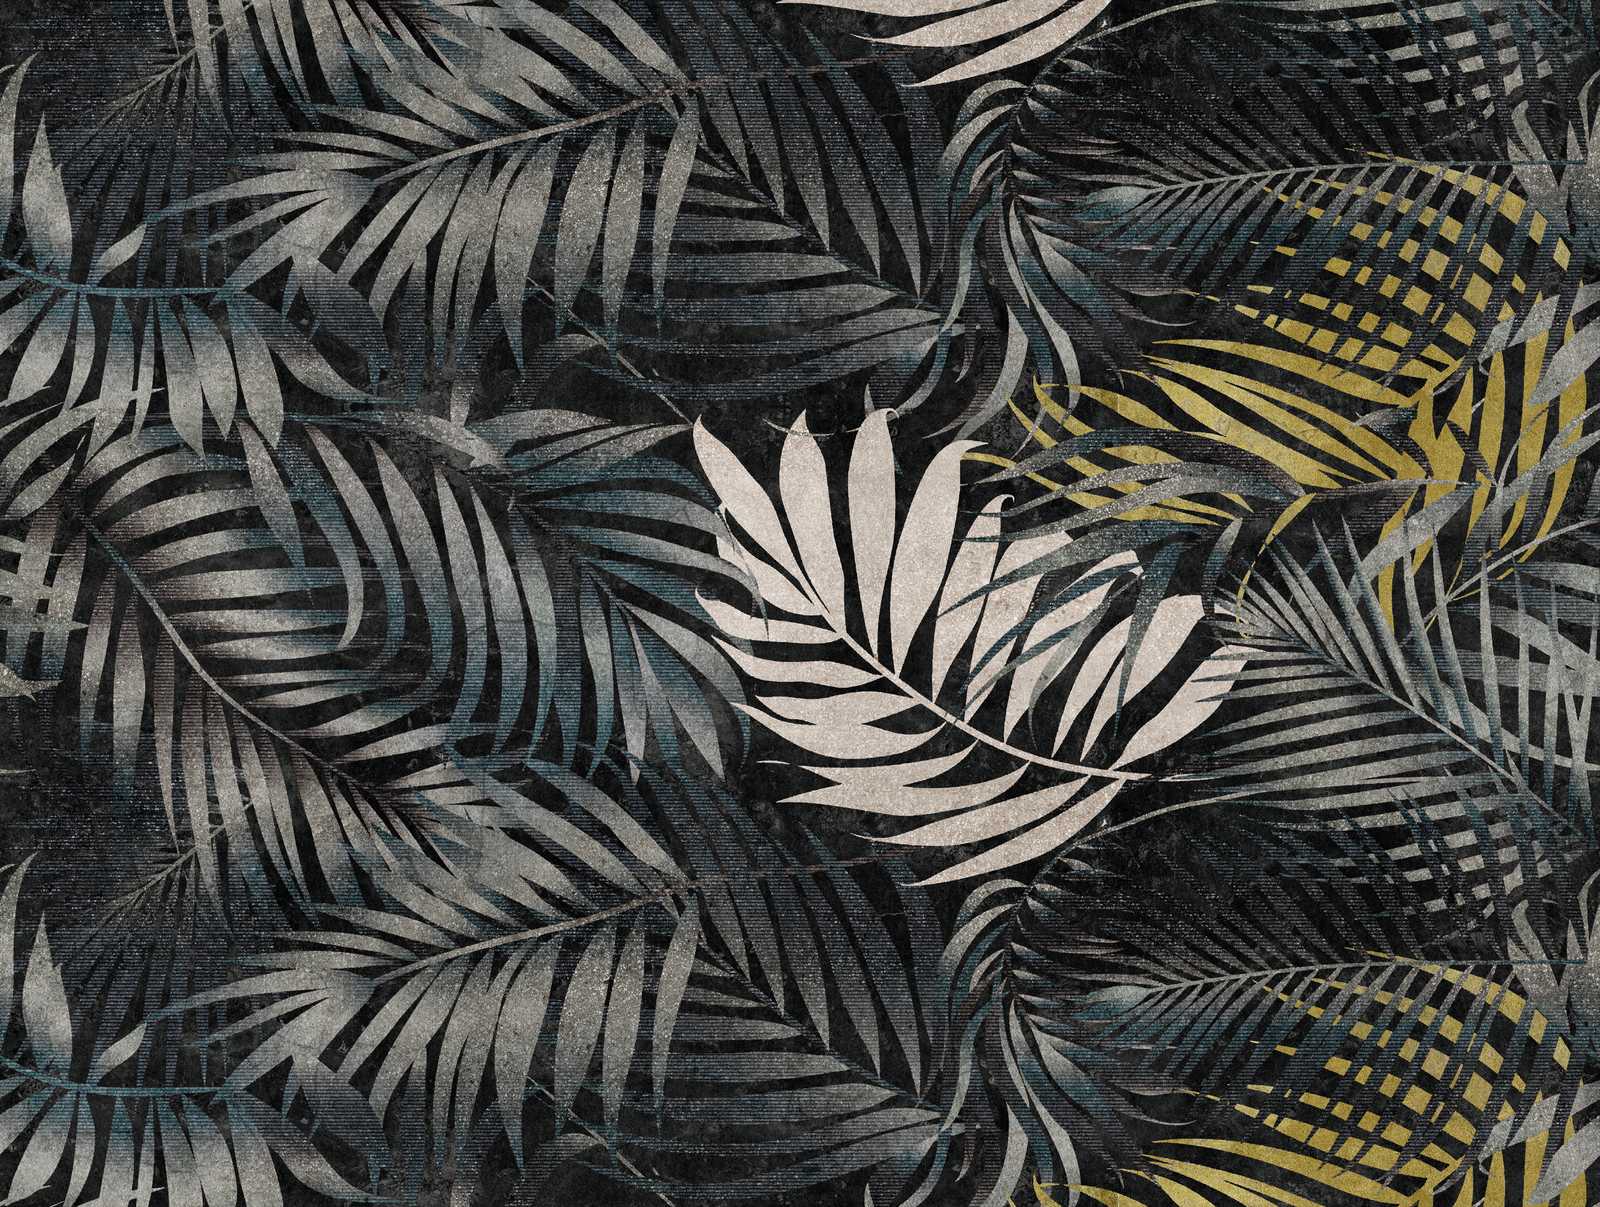             Wallpaper novelty | motif wallpaper XXL leaves in Hawaii retro look
        